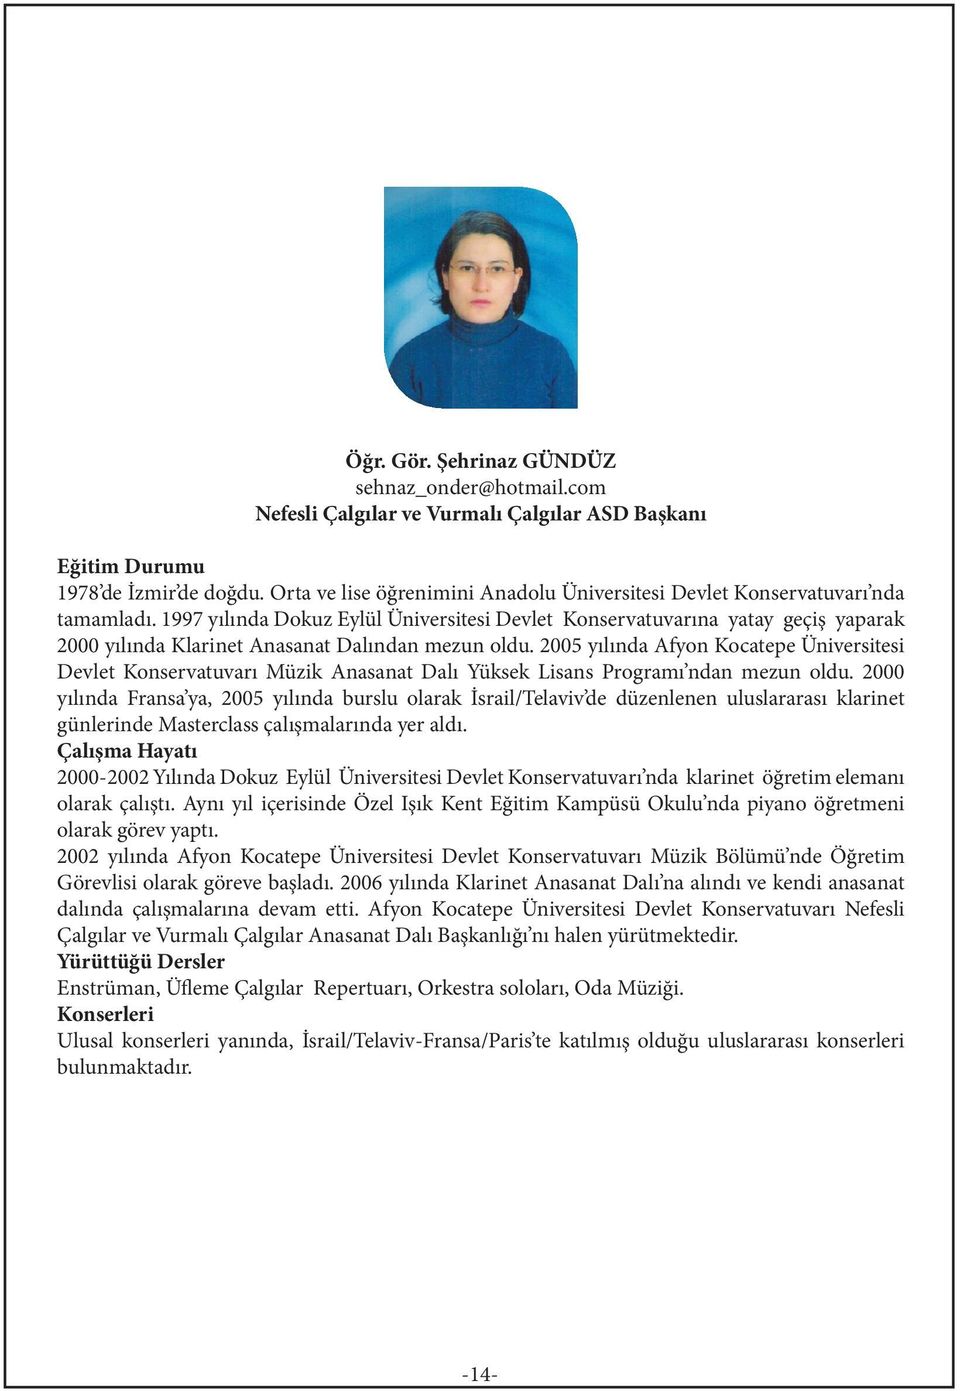 1997 yılında Dokuz Eylül Üniversitesi Devlet Konservatuvarına yatay geçiş yaparak 2000 yılında Klarinet Anasanat Dalından mezun oldu.